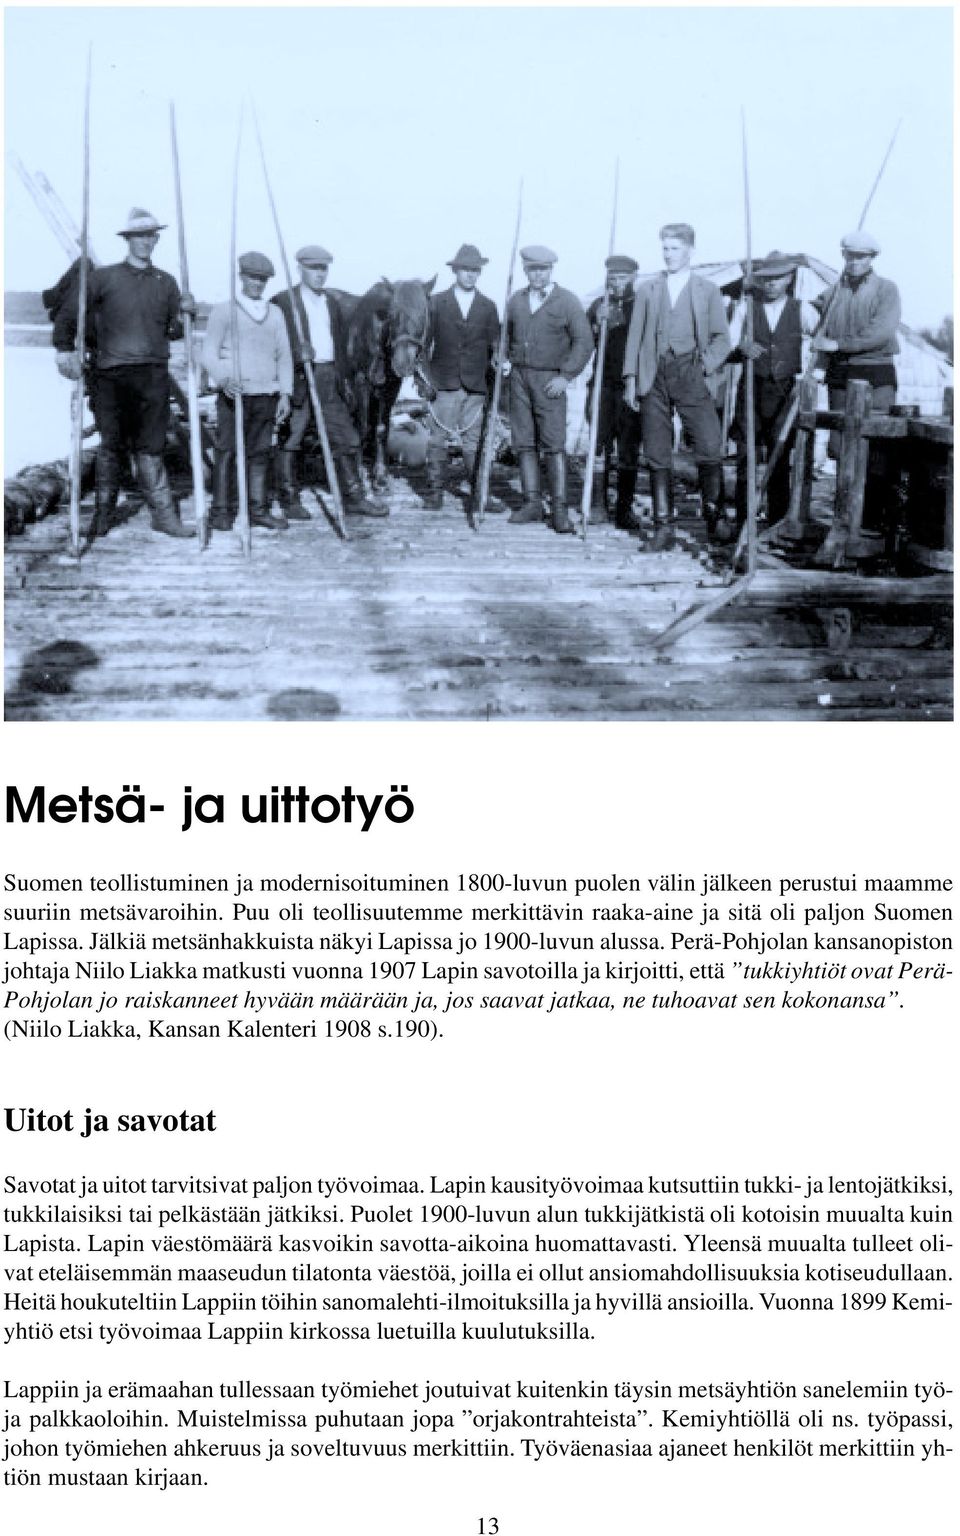 Perä-Pohjolan kansanopiston johtaja Niilo Liakka matkusti vuonna 1907 Lapin savotoilla ja kirjoitti, että tukkiyhtiöt ovat Perä- Pohjolan jo raiskanneet hyvään määrään ja, jos saavat jatkaa, ne